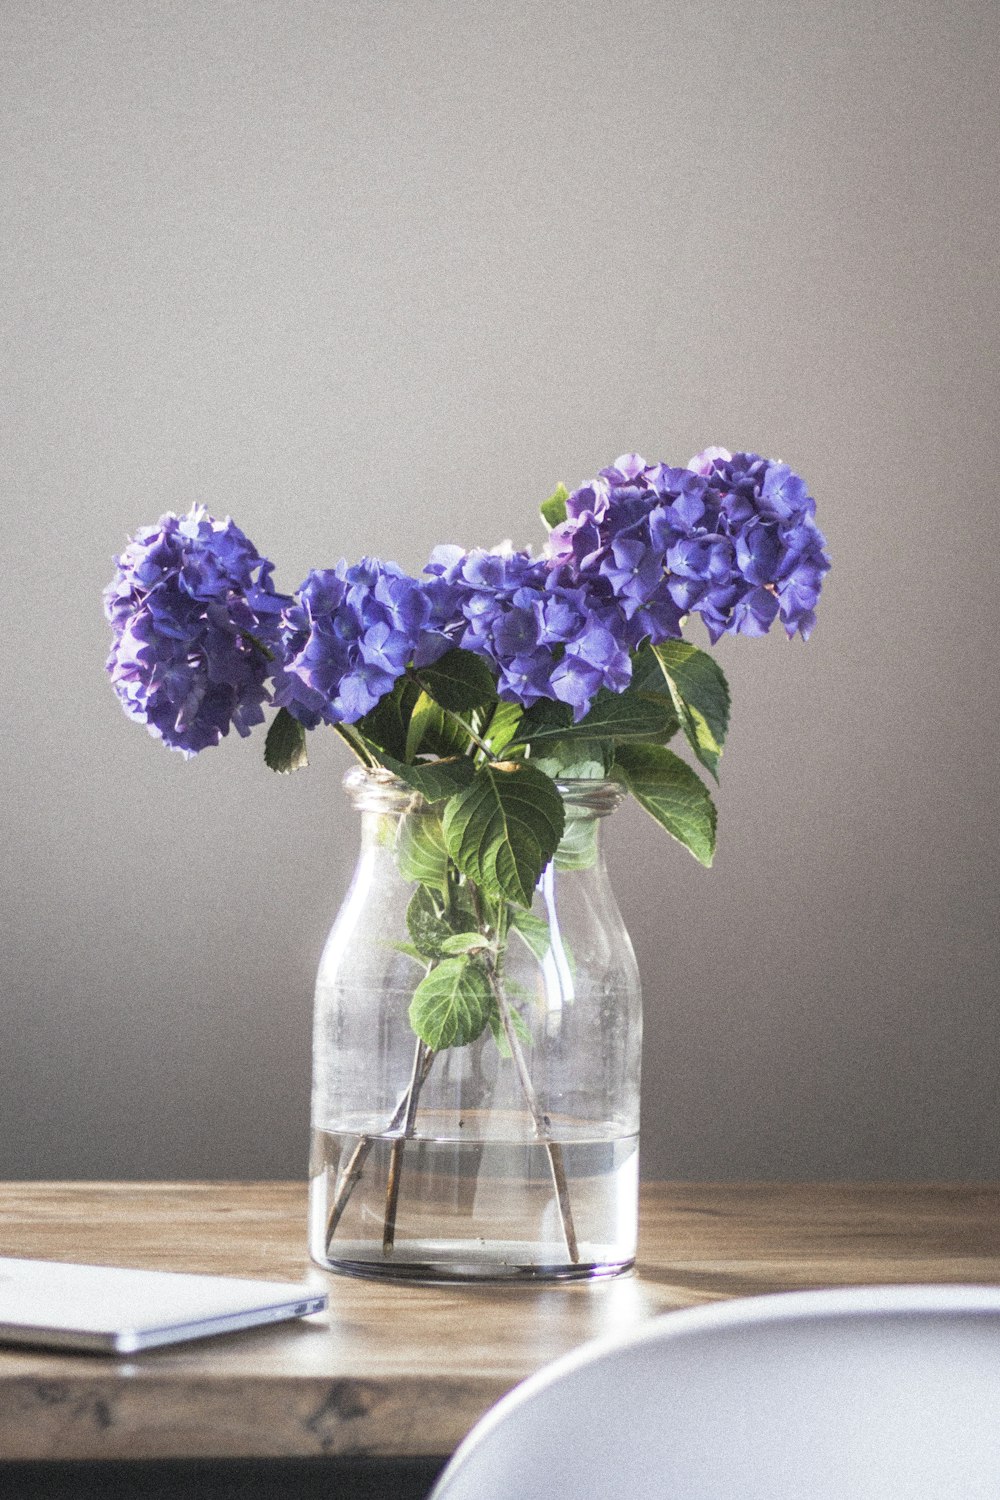 透明なガラスの花瓶に咲いた紫色の花